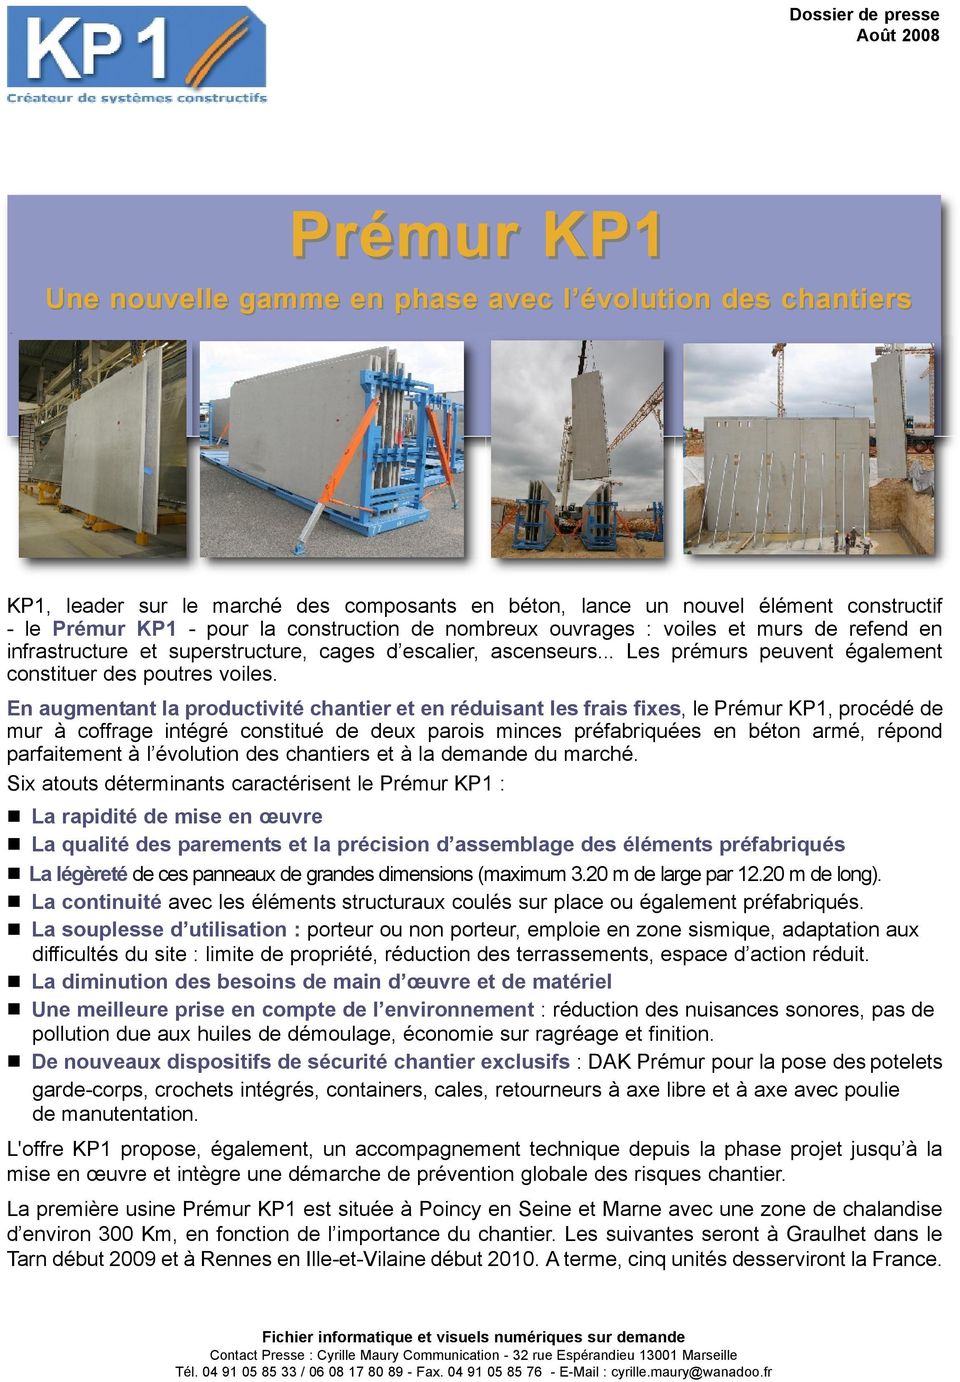 En augmentant la productivité chantier et en réduisant les frais fixes, le Prémur KP1, procédé de mur à coffrage intégré constitué de deux parois minces préfabriquées en béton armé, répond